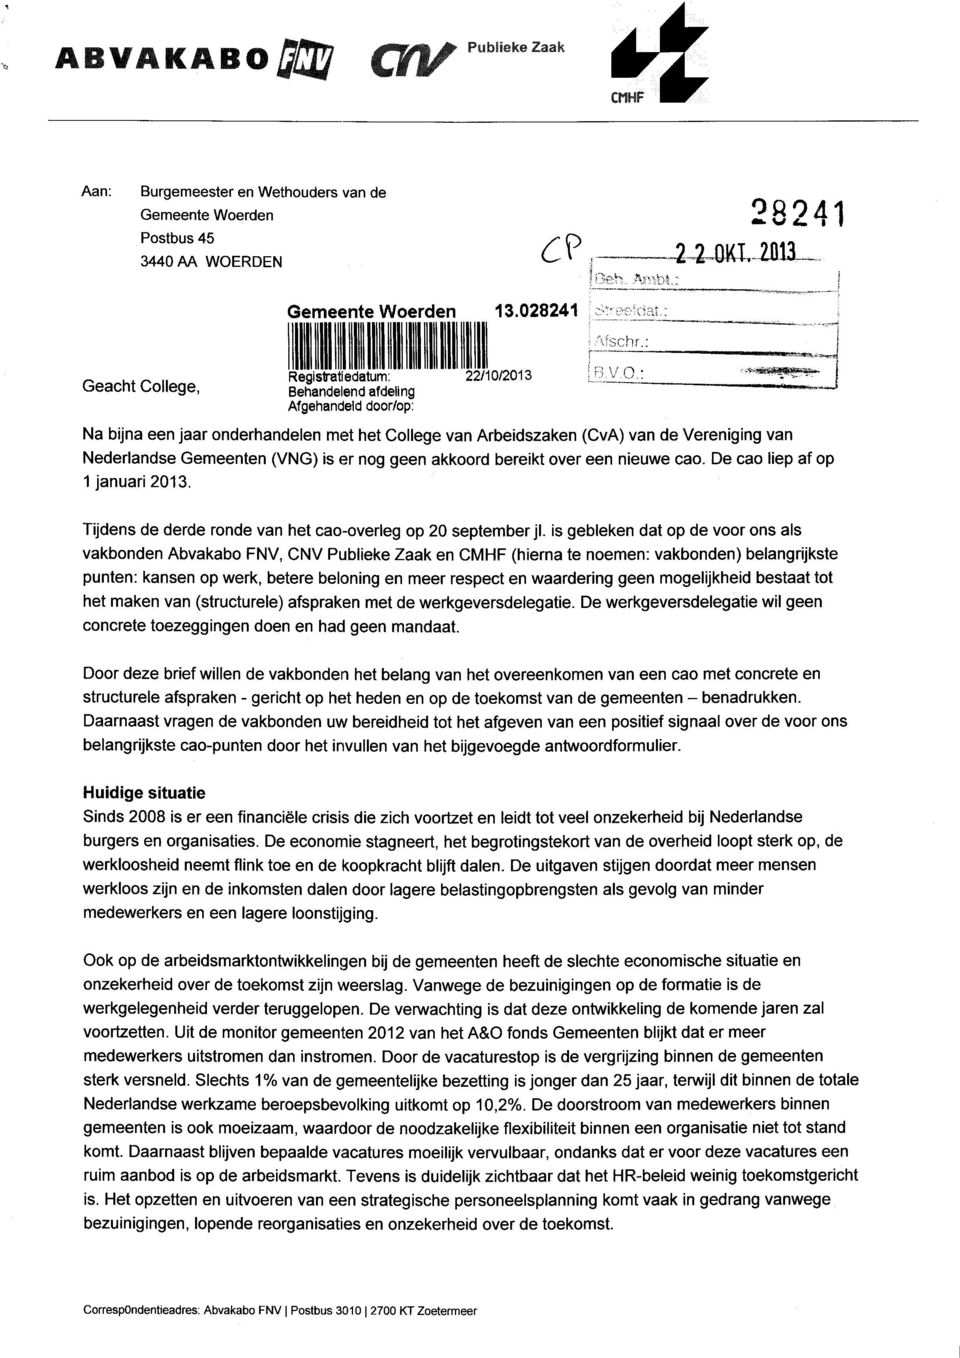 : Na bijna een jaar onderhandelen met het College van Arbeidszaken (CvA) van de Vereniging van Nederlandse Gemeenten (VNG) is er nog geen akkoord bereikt over een nieuwe cao.